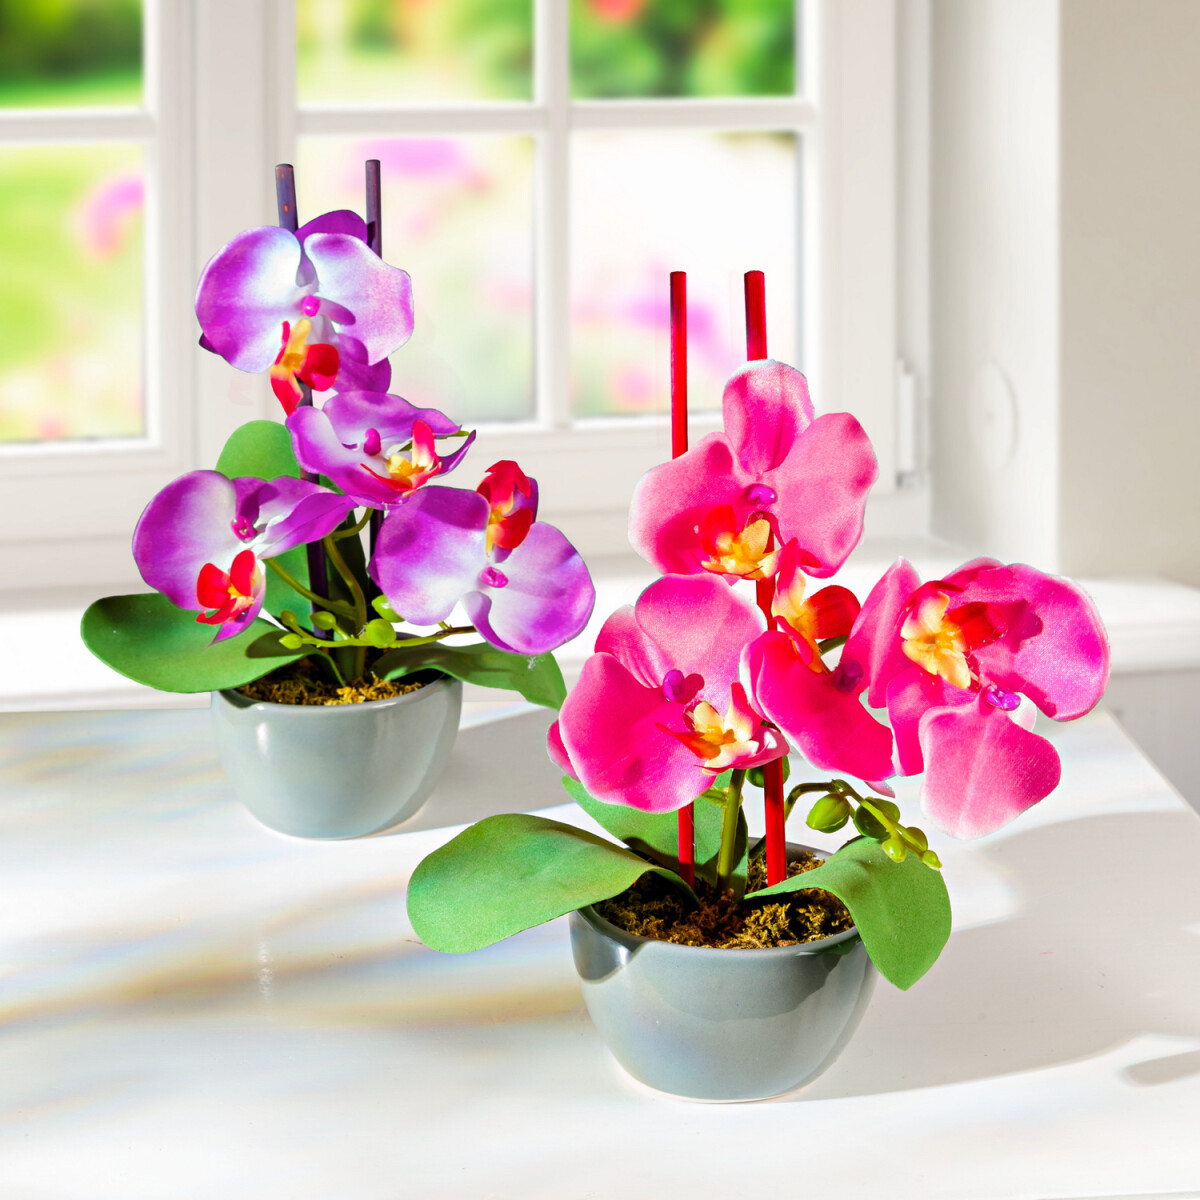 E-shop 2 aranžmány "Orchidea v kvetináči"